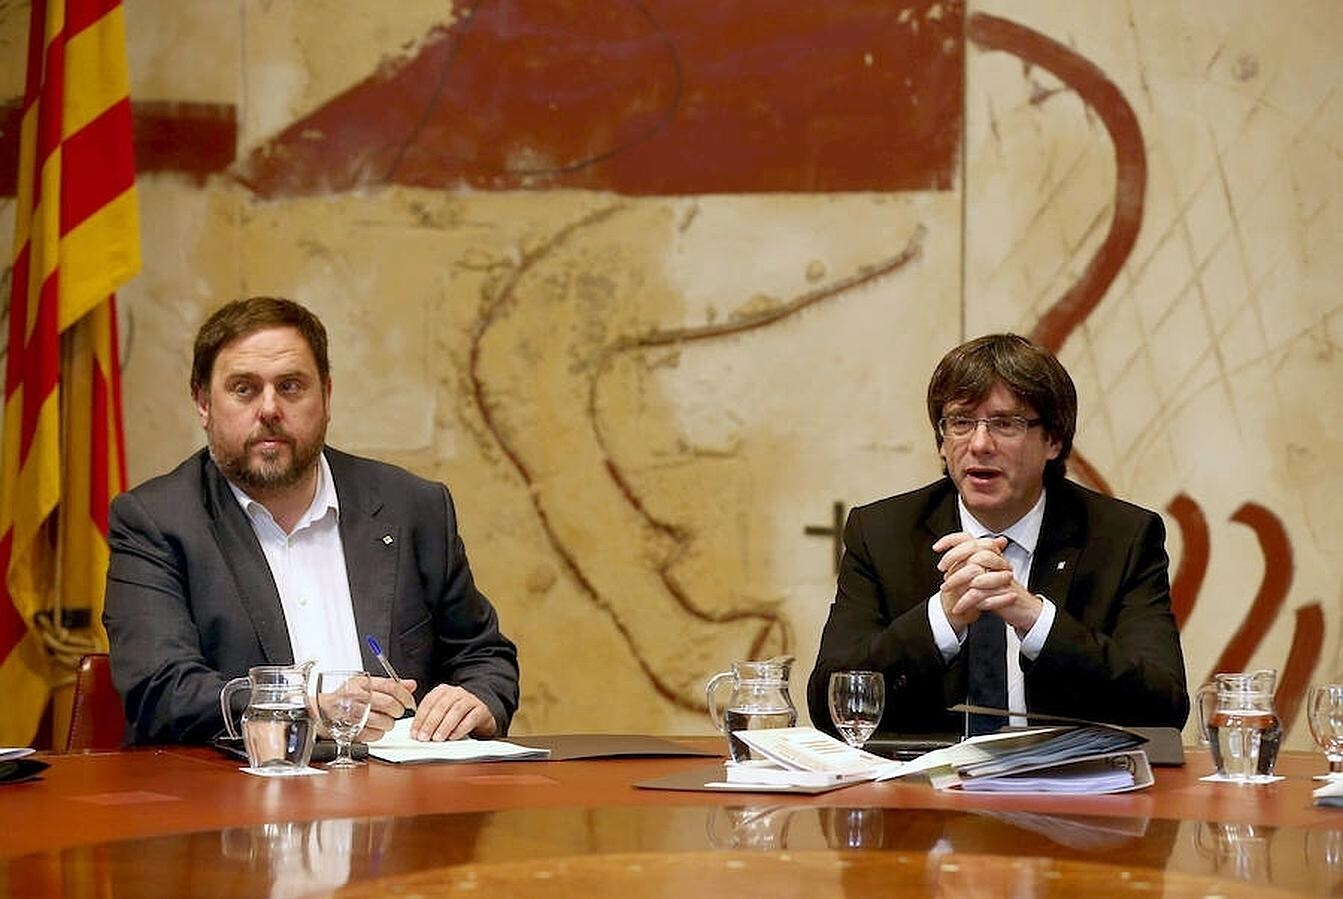 La Generalitat de Cataluña ha evitado pronunciarse sobre si excluirá al castellano como idioma oficial durante su reunión semanal. En la fotografía, el presidente de la comunidad, Carlos Puigdemont; y su vicepresidente, Oriol Junqueras